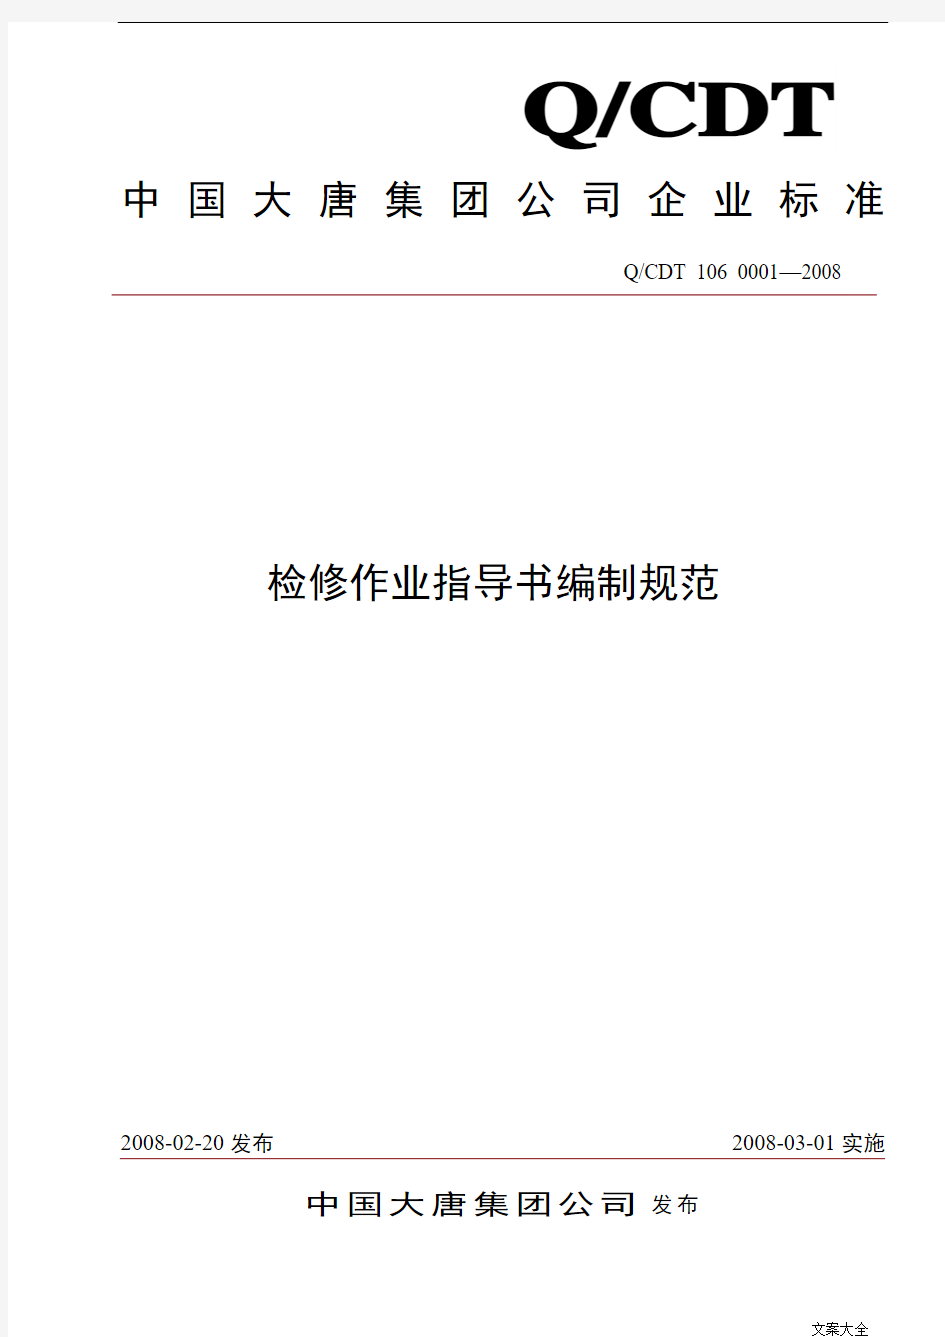 中国大唐集团公司管理系统检修作业指导书编制要求要求规范